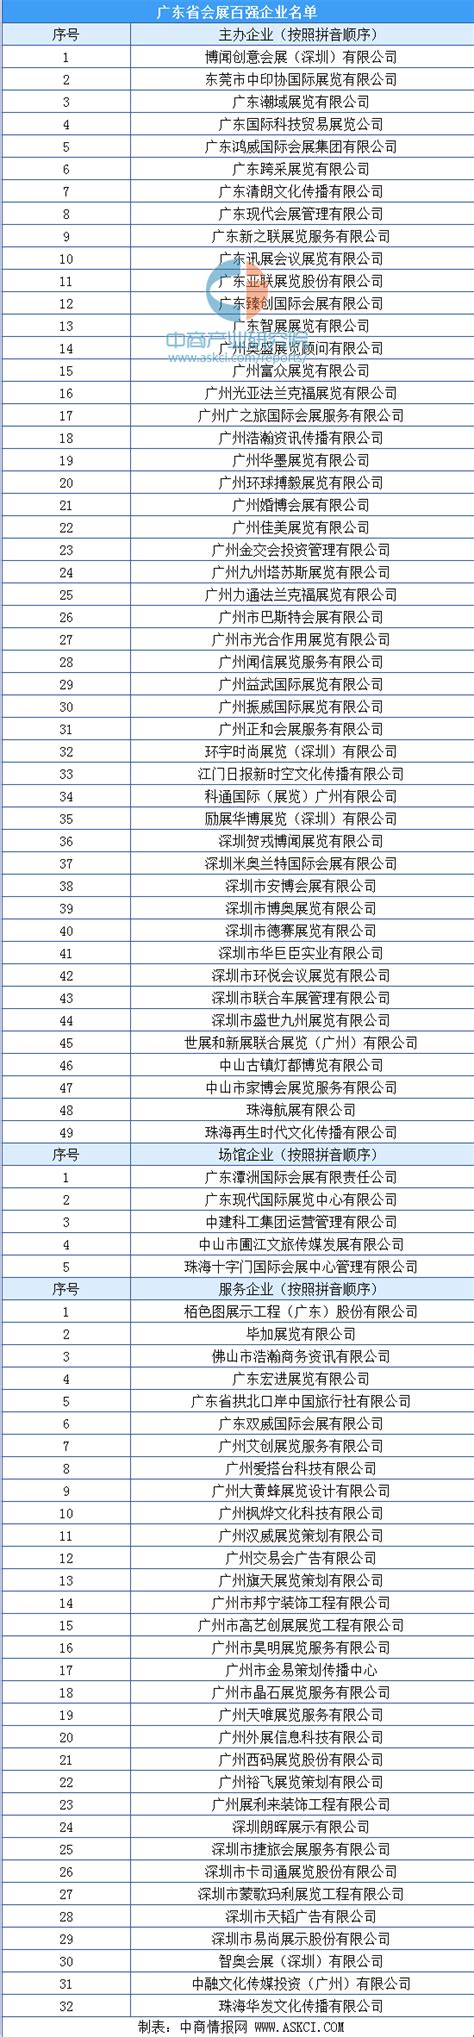 2019年广东省民营企业100强排行榜-排行榜-中商情报网